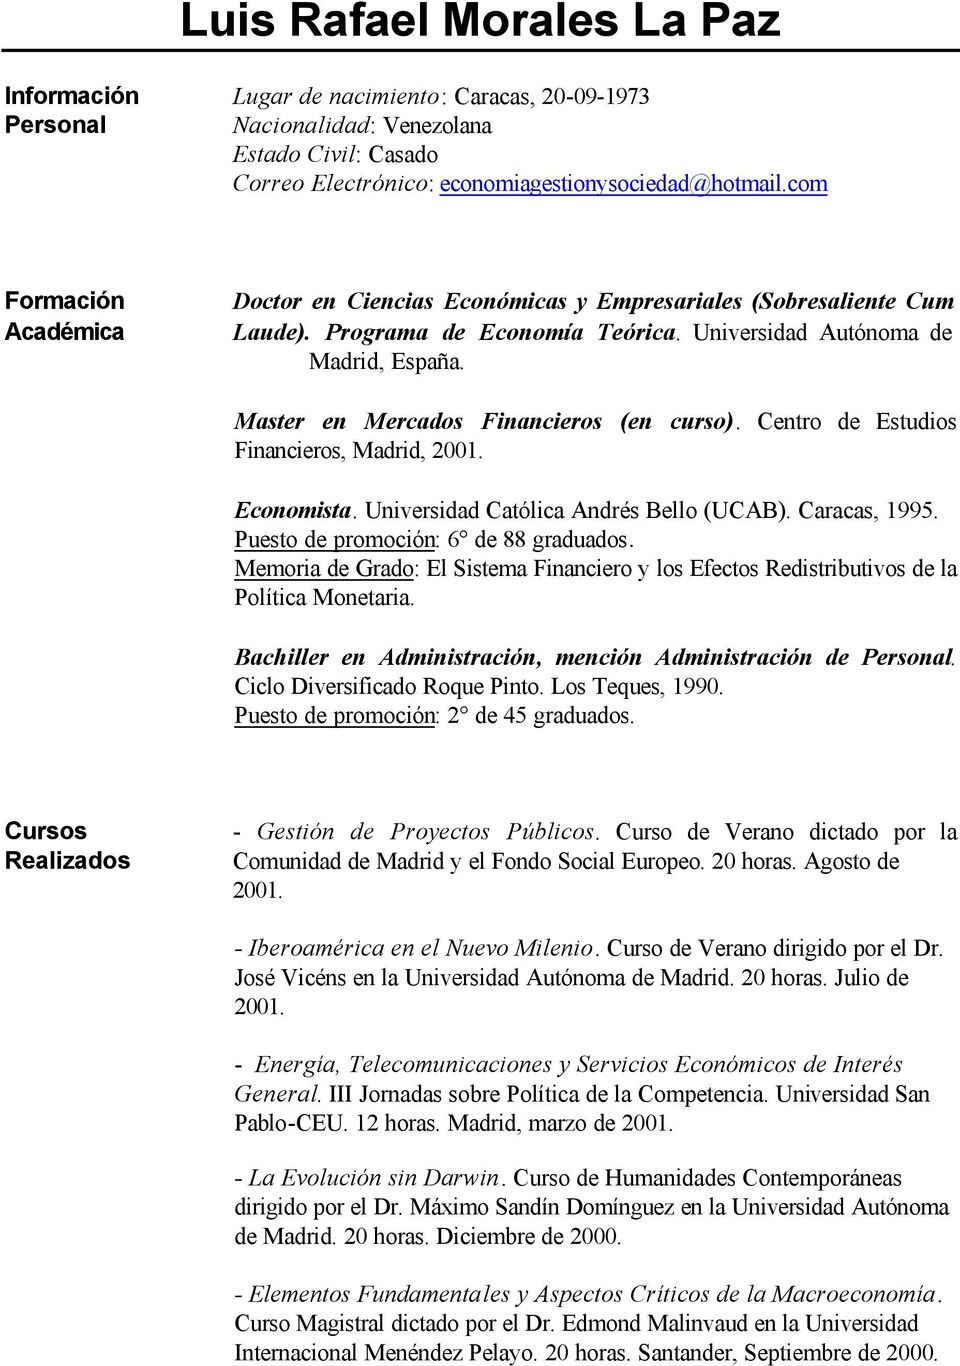 Master en Mercados Financieros (en curso). Centro de Estudios Financieros, Madrid, 2001. Economista. Universidad Católica Andrés Bello (UCAB). Caracas, 1995. Puesto de promoción: 6 de 88 graduados.